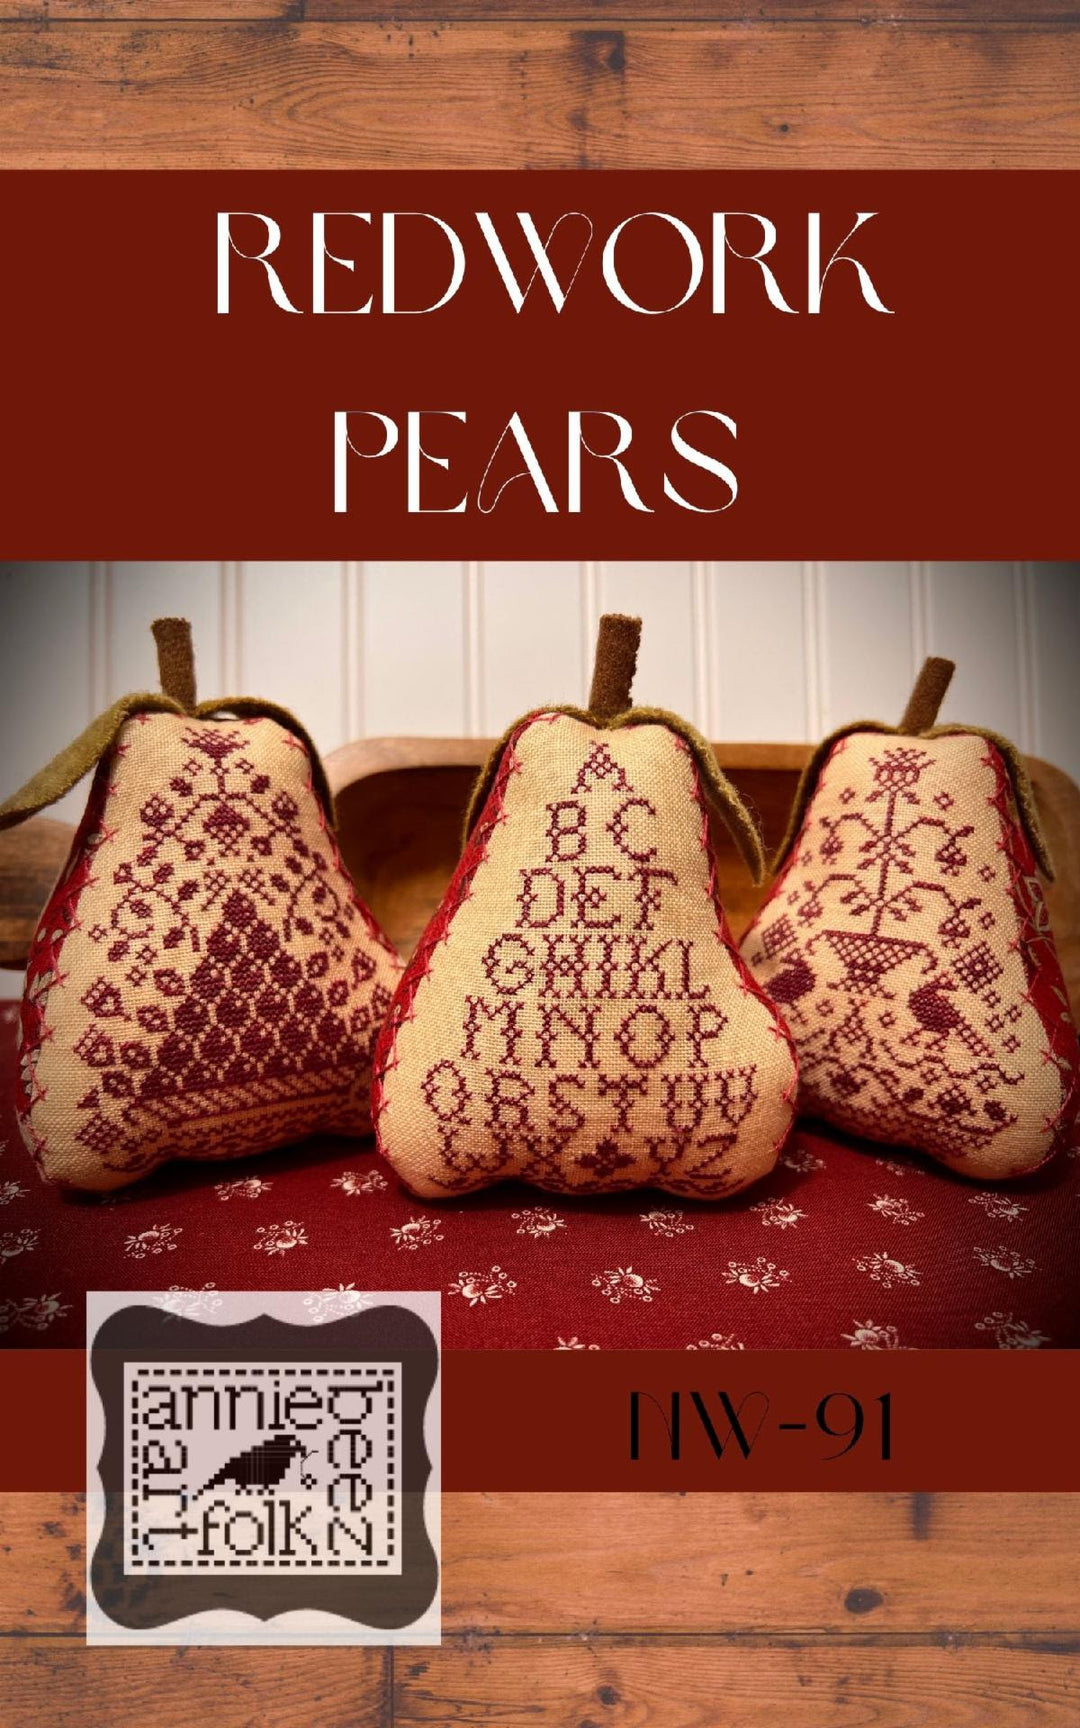 Redwork Pears | Annie Beez Folk Art